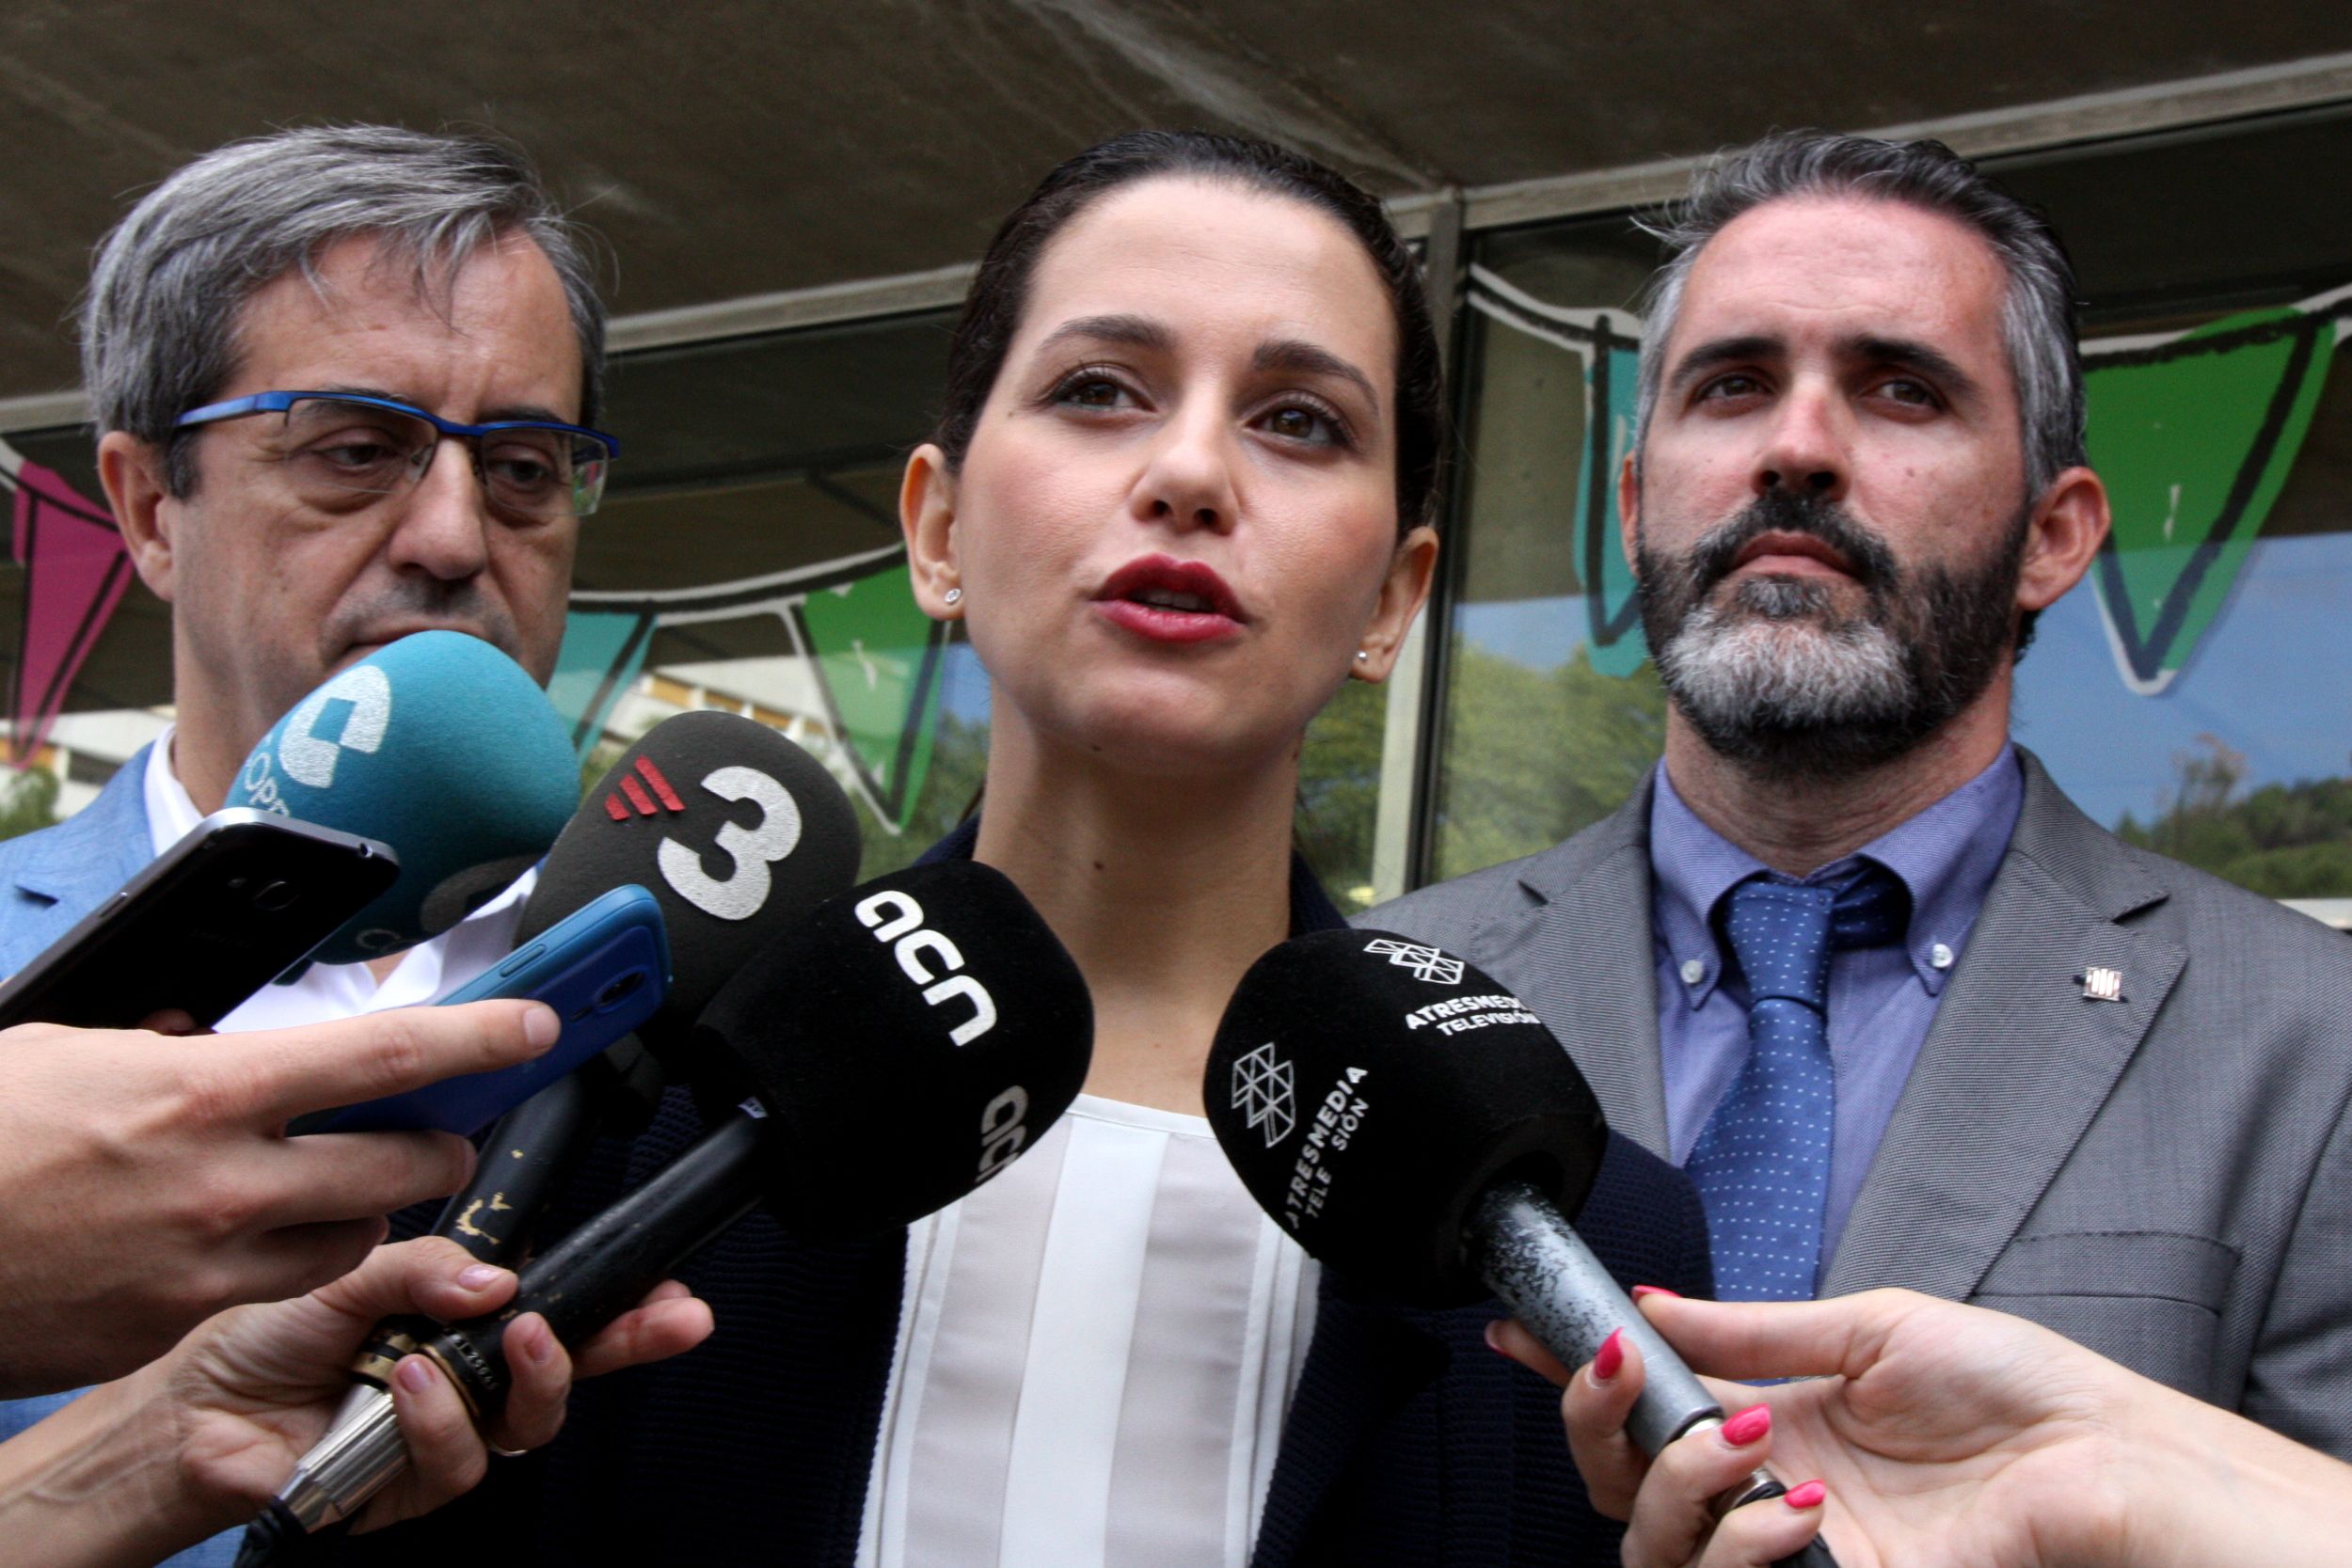 Arrimadas califica como "error colosal" los ataques entre "constitucionalistas" en Catalunya